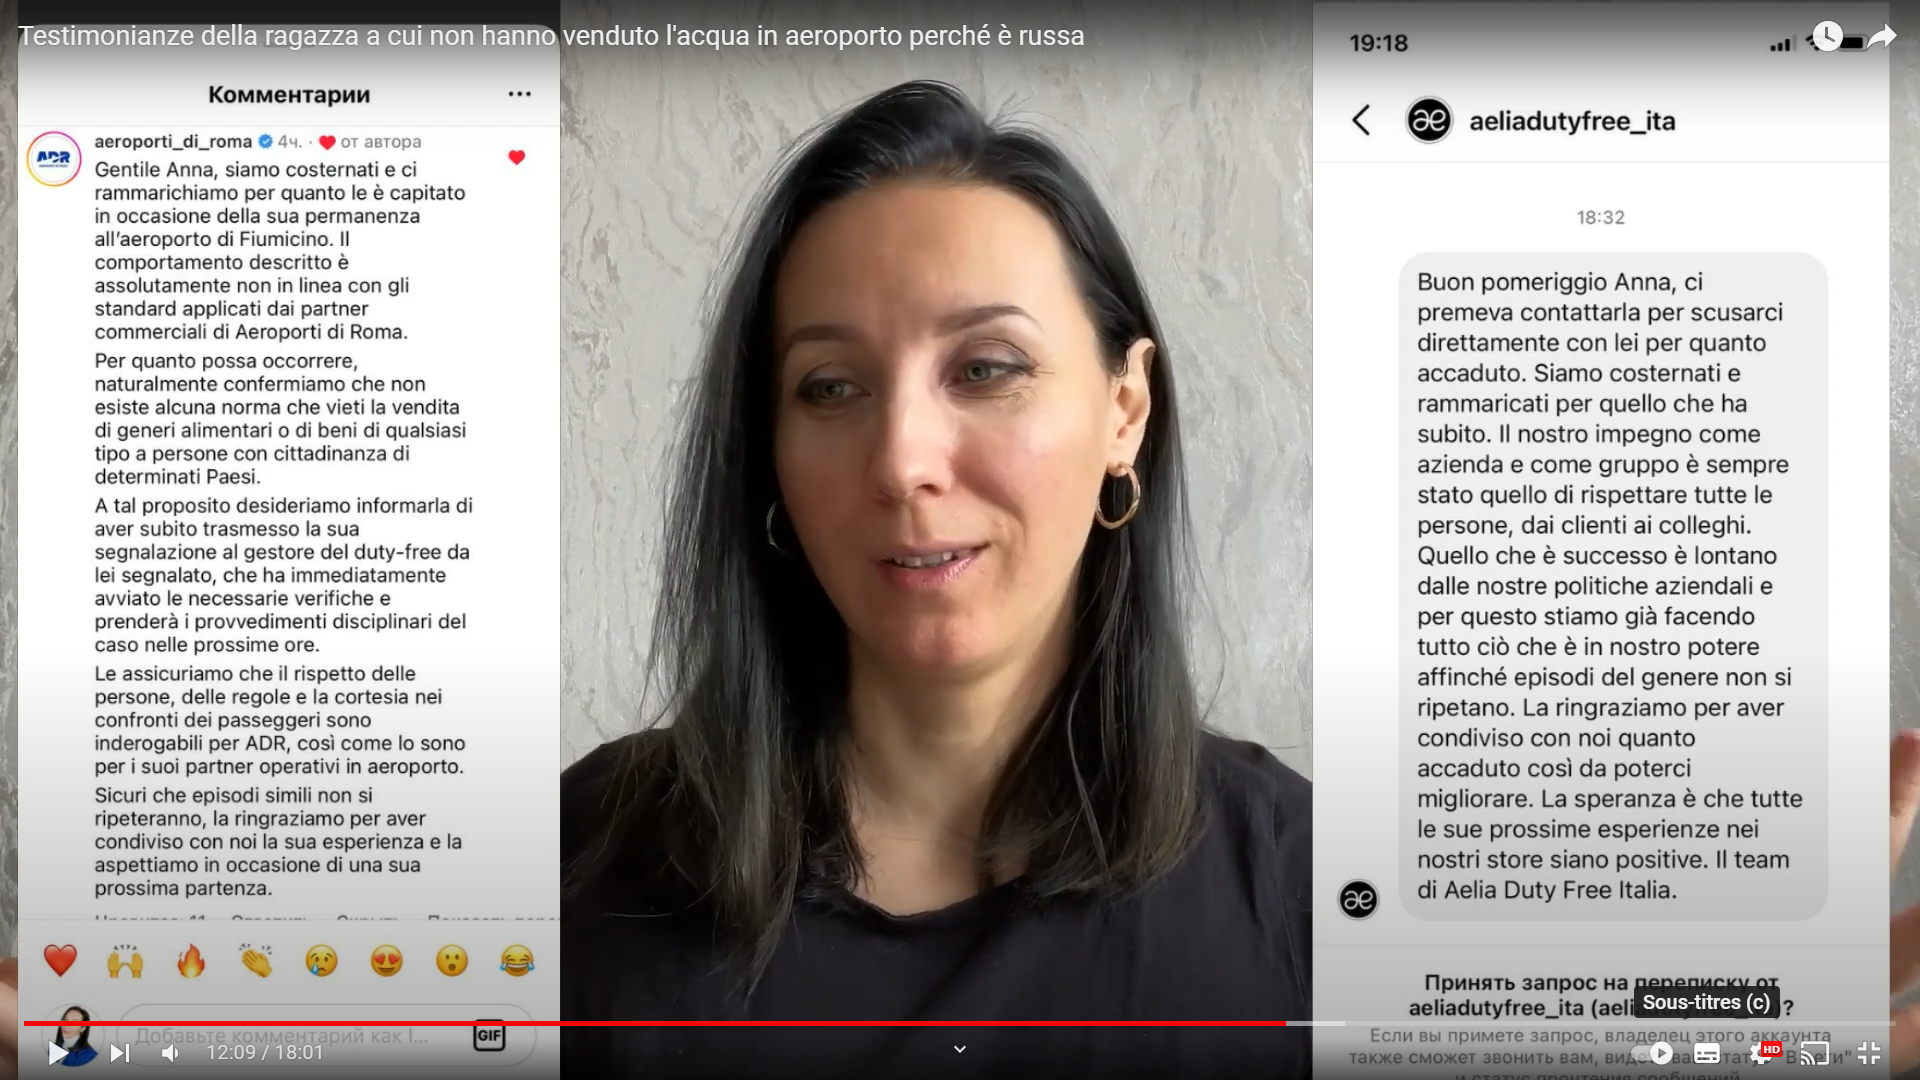 In Italia, il video di un cittadino russo a cui viene vietato l'acquisto di acqua all'aeroporto di Roma provoca le scuse del marchio